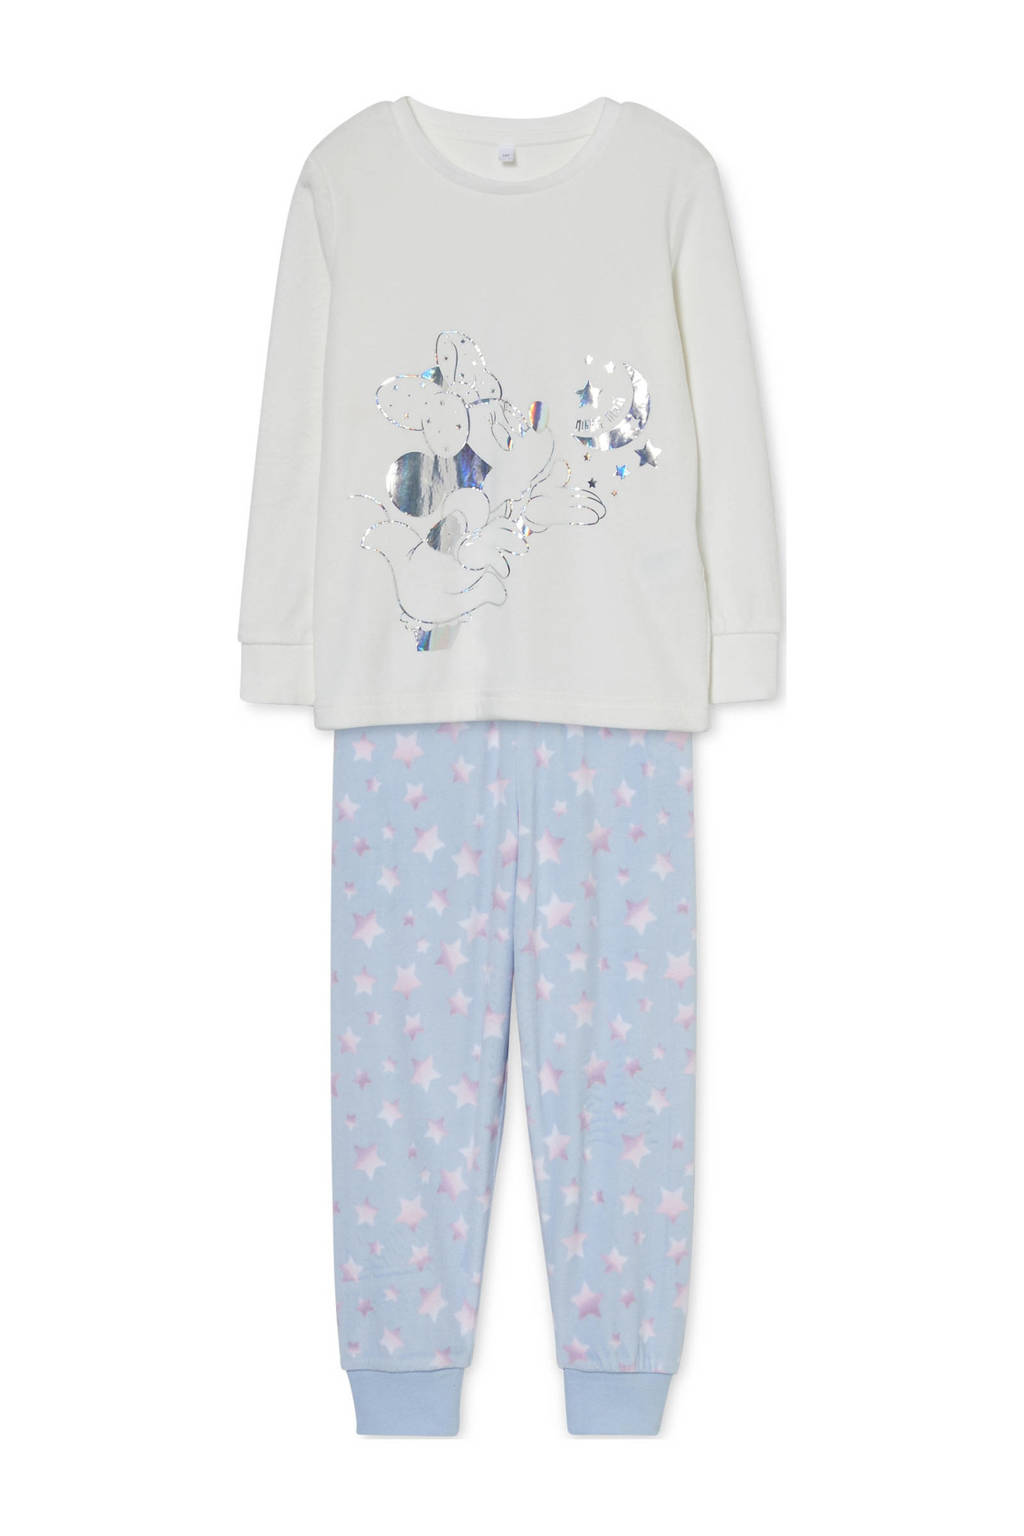 Disney @ C&A Minnie Mouse pyjama met printopdruk wit/blauw, Wit/blauw